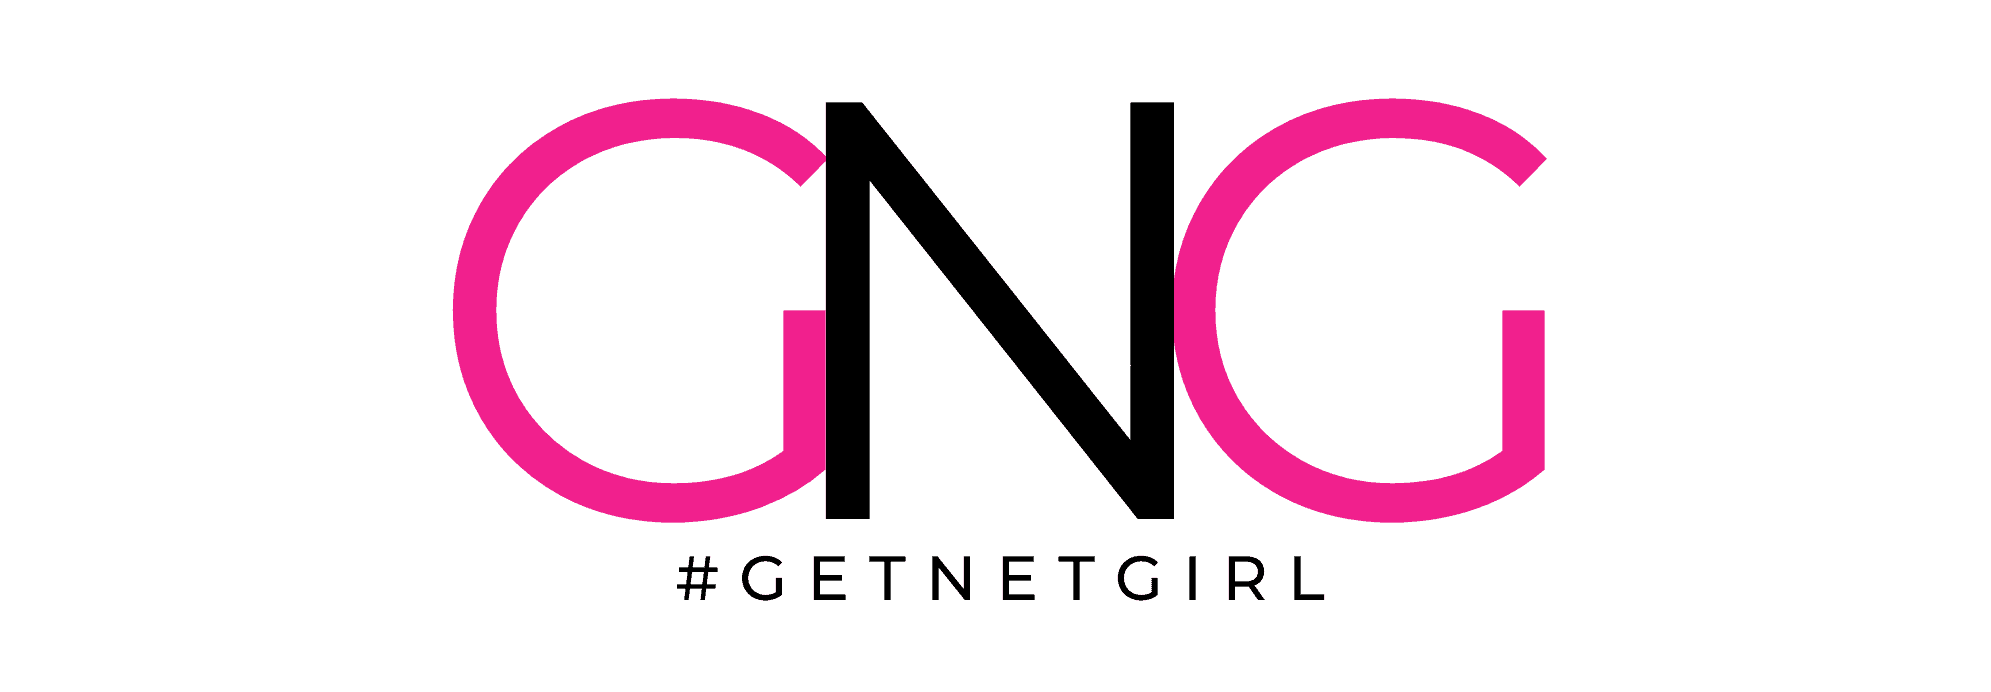 Copy of Get Net Girl logos